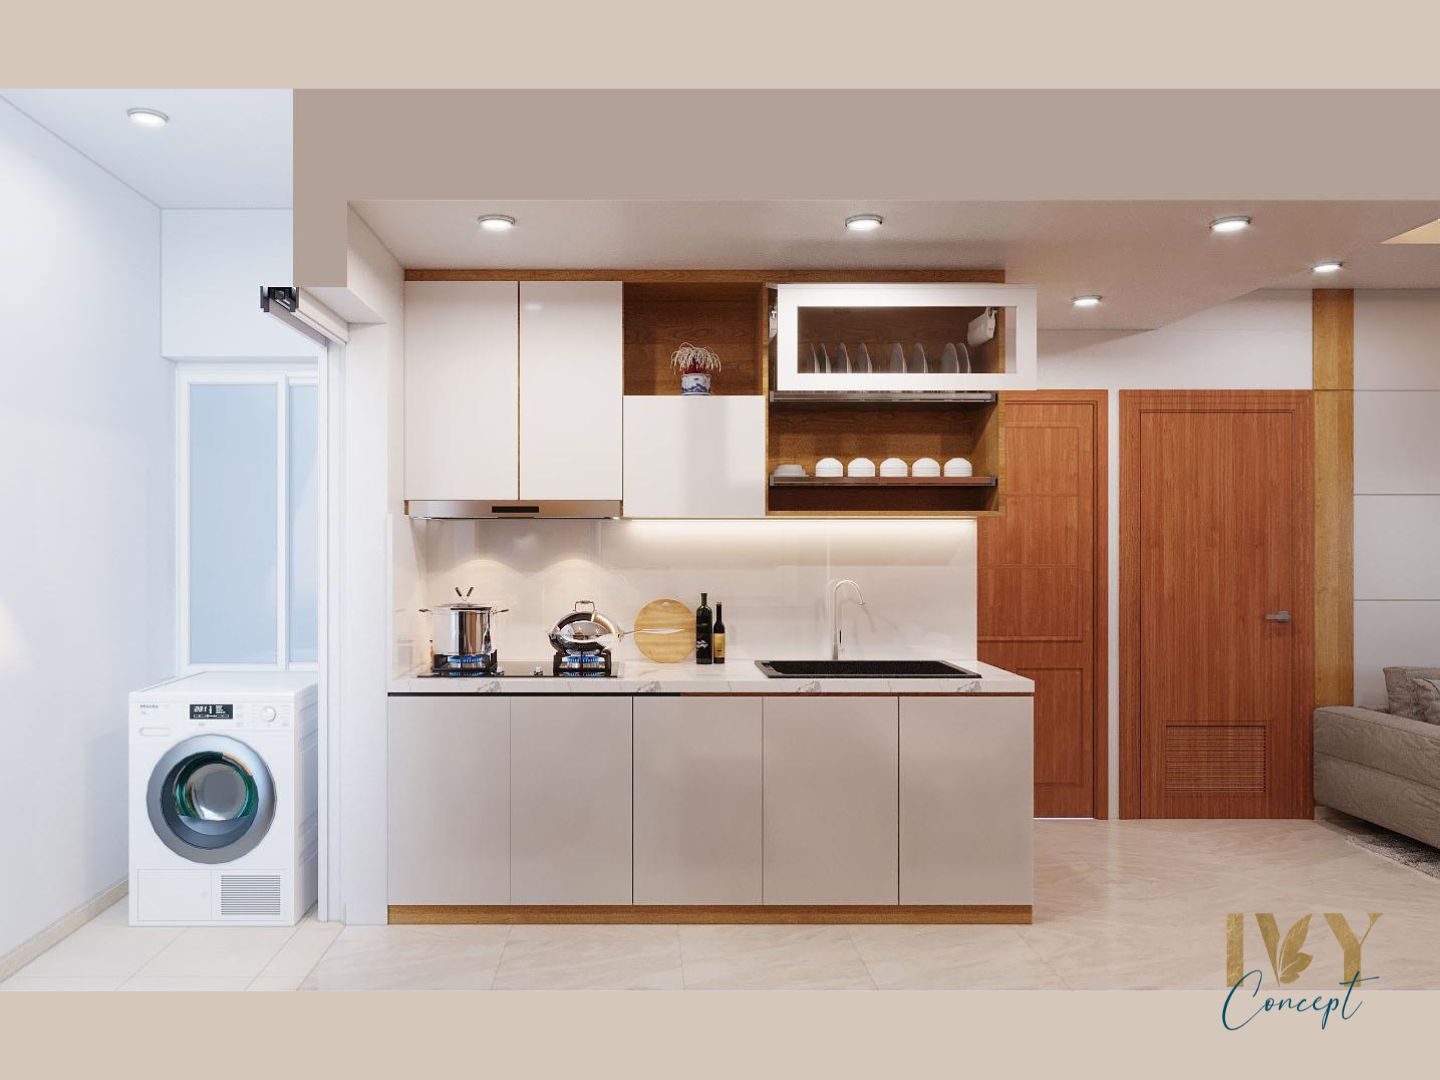 Phòng bếp, phong cách Bắc Âu Scandinavian, thiết kế concept nội thất, căn hộ The CBD Premium Home